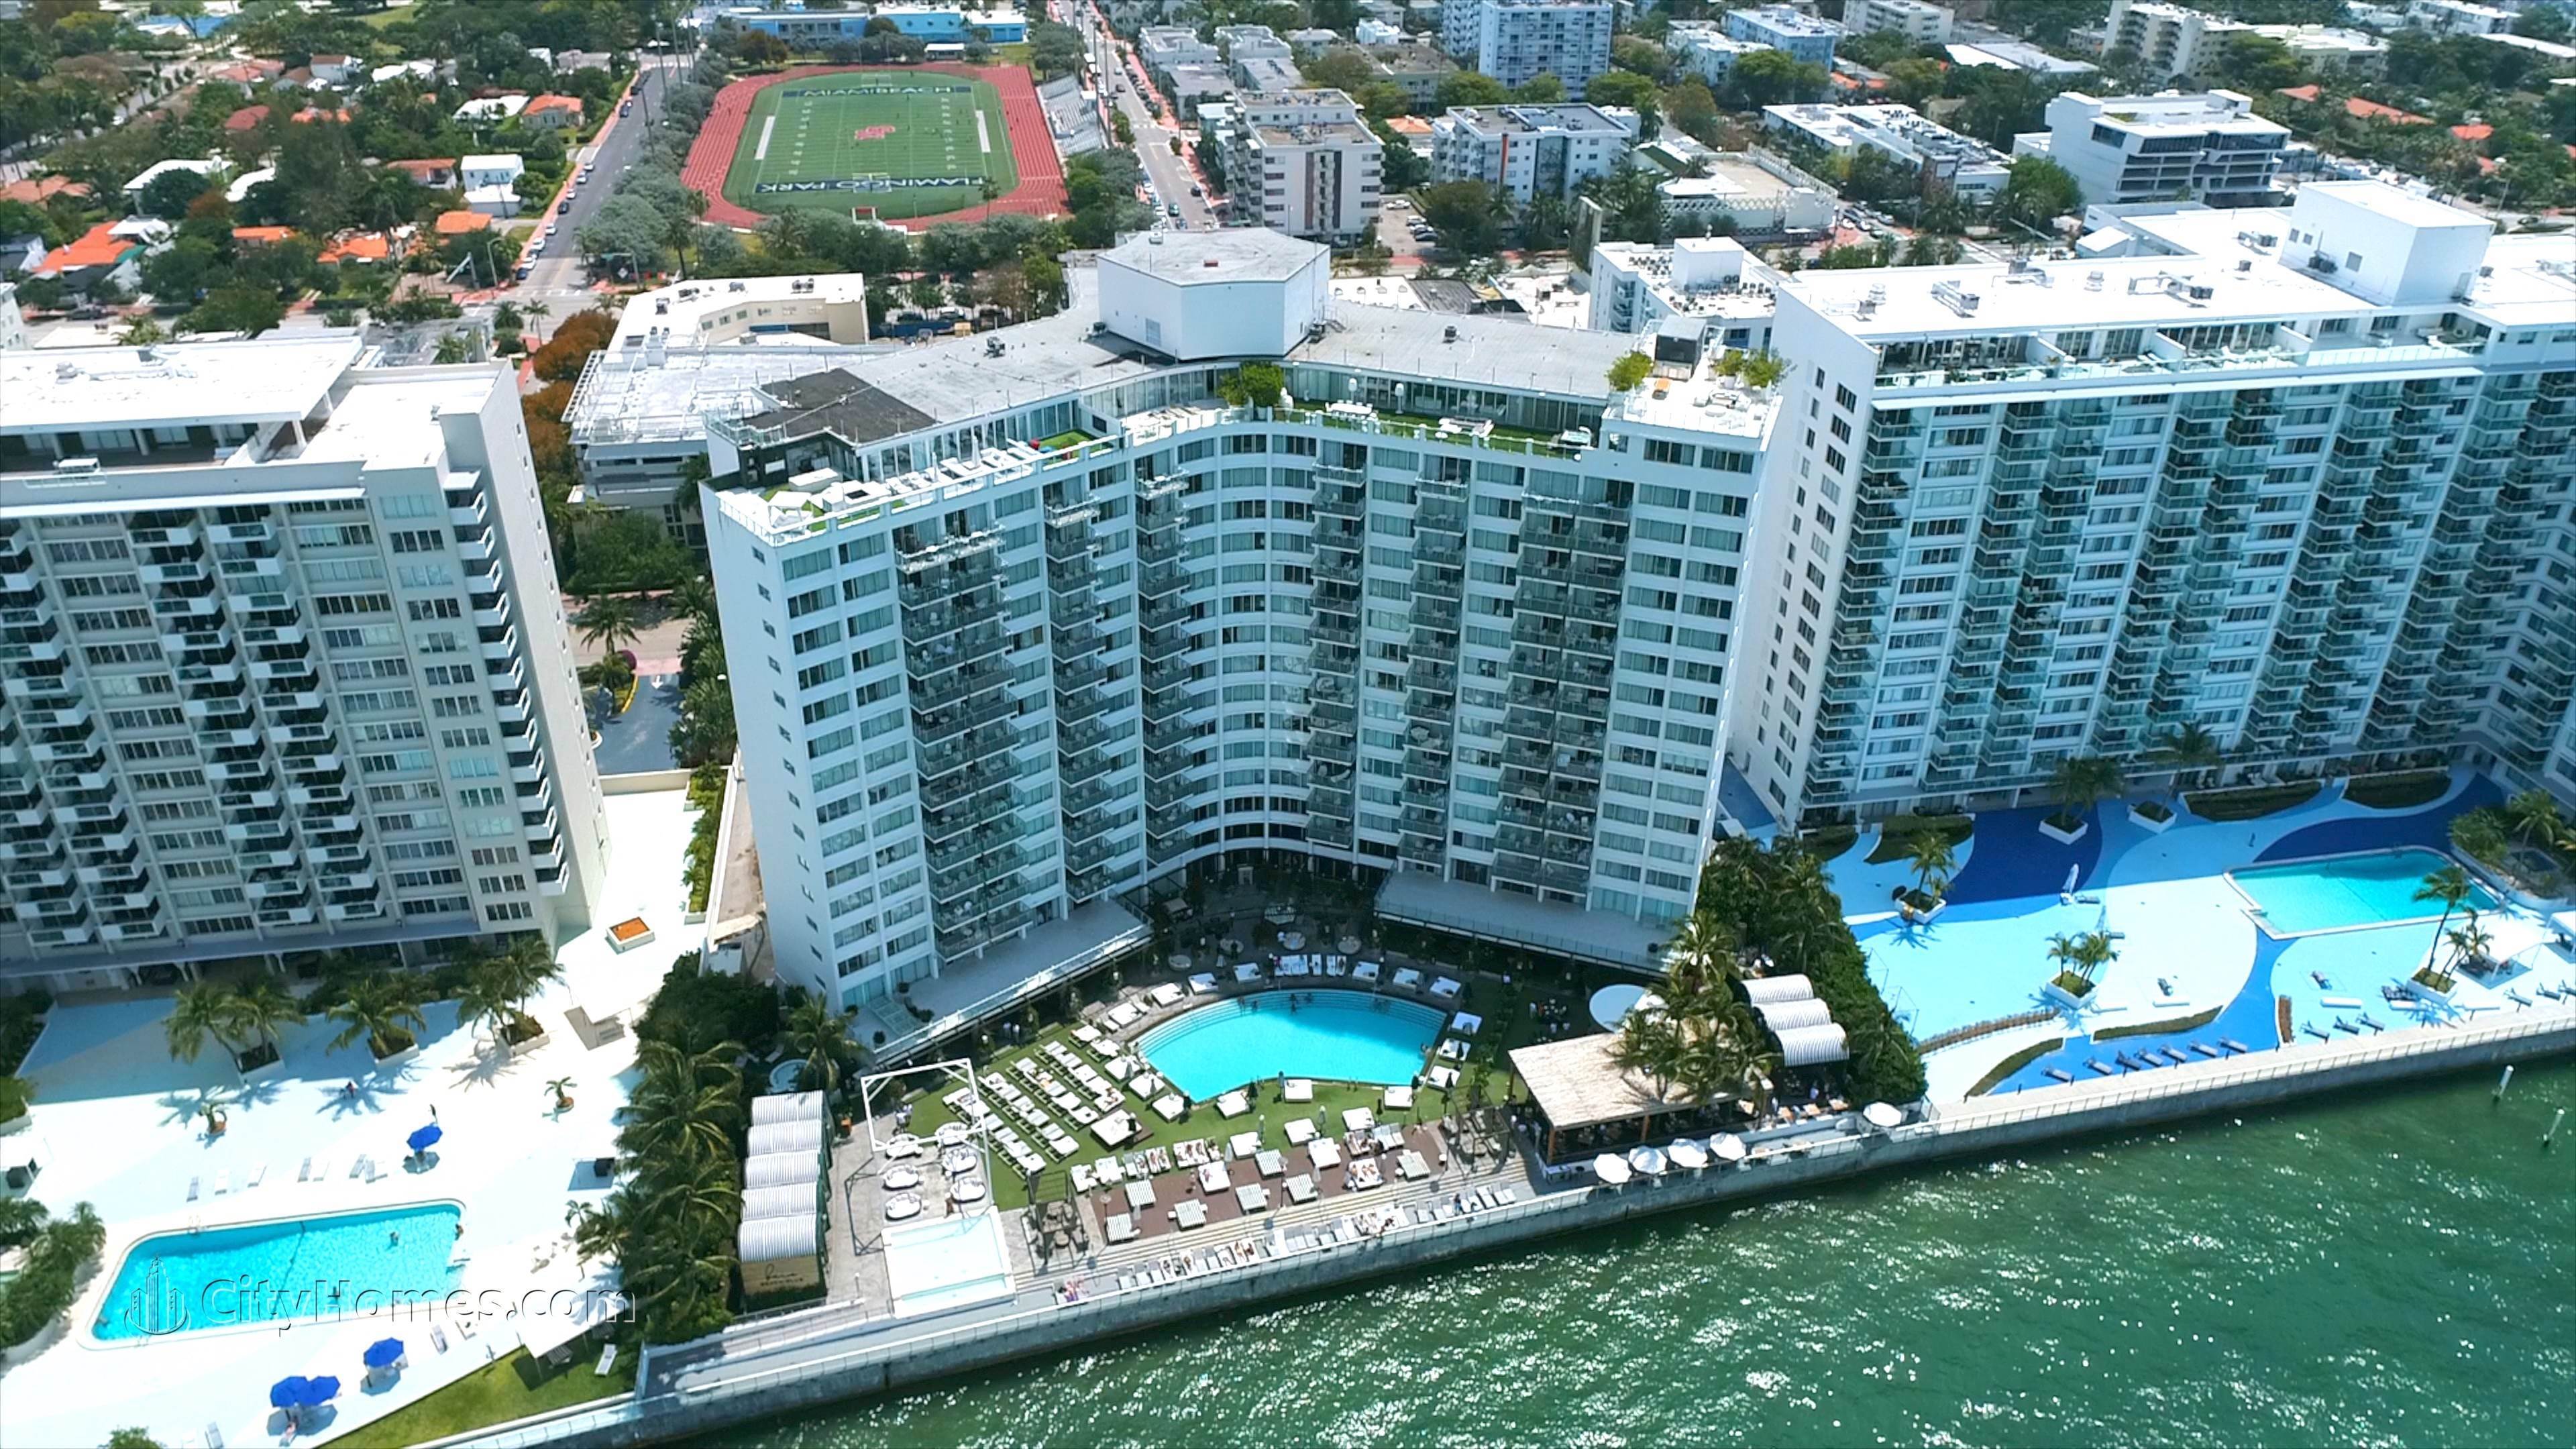 MONDRIAN SOUTH BEACH building at 1100 West Avenue, Flamingo / Lummus, Miami Beach, FL 33139